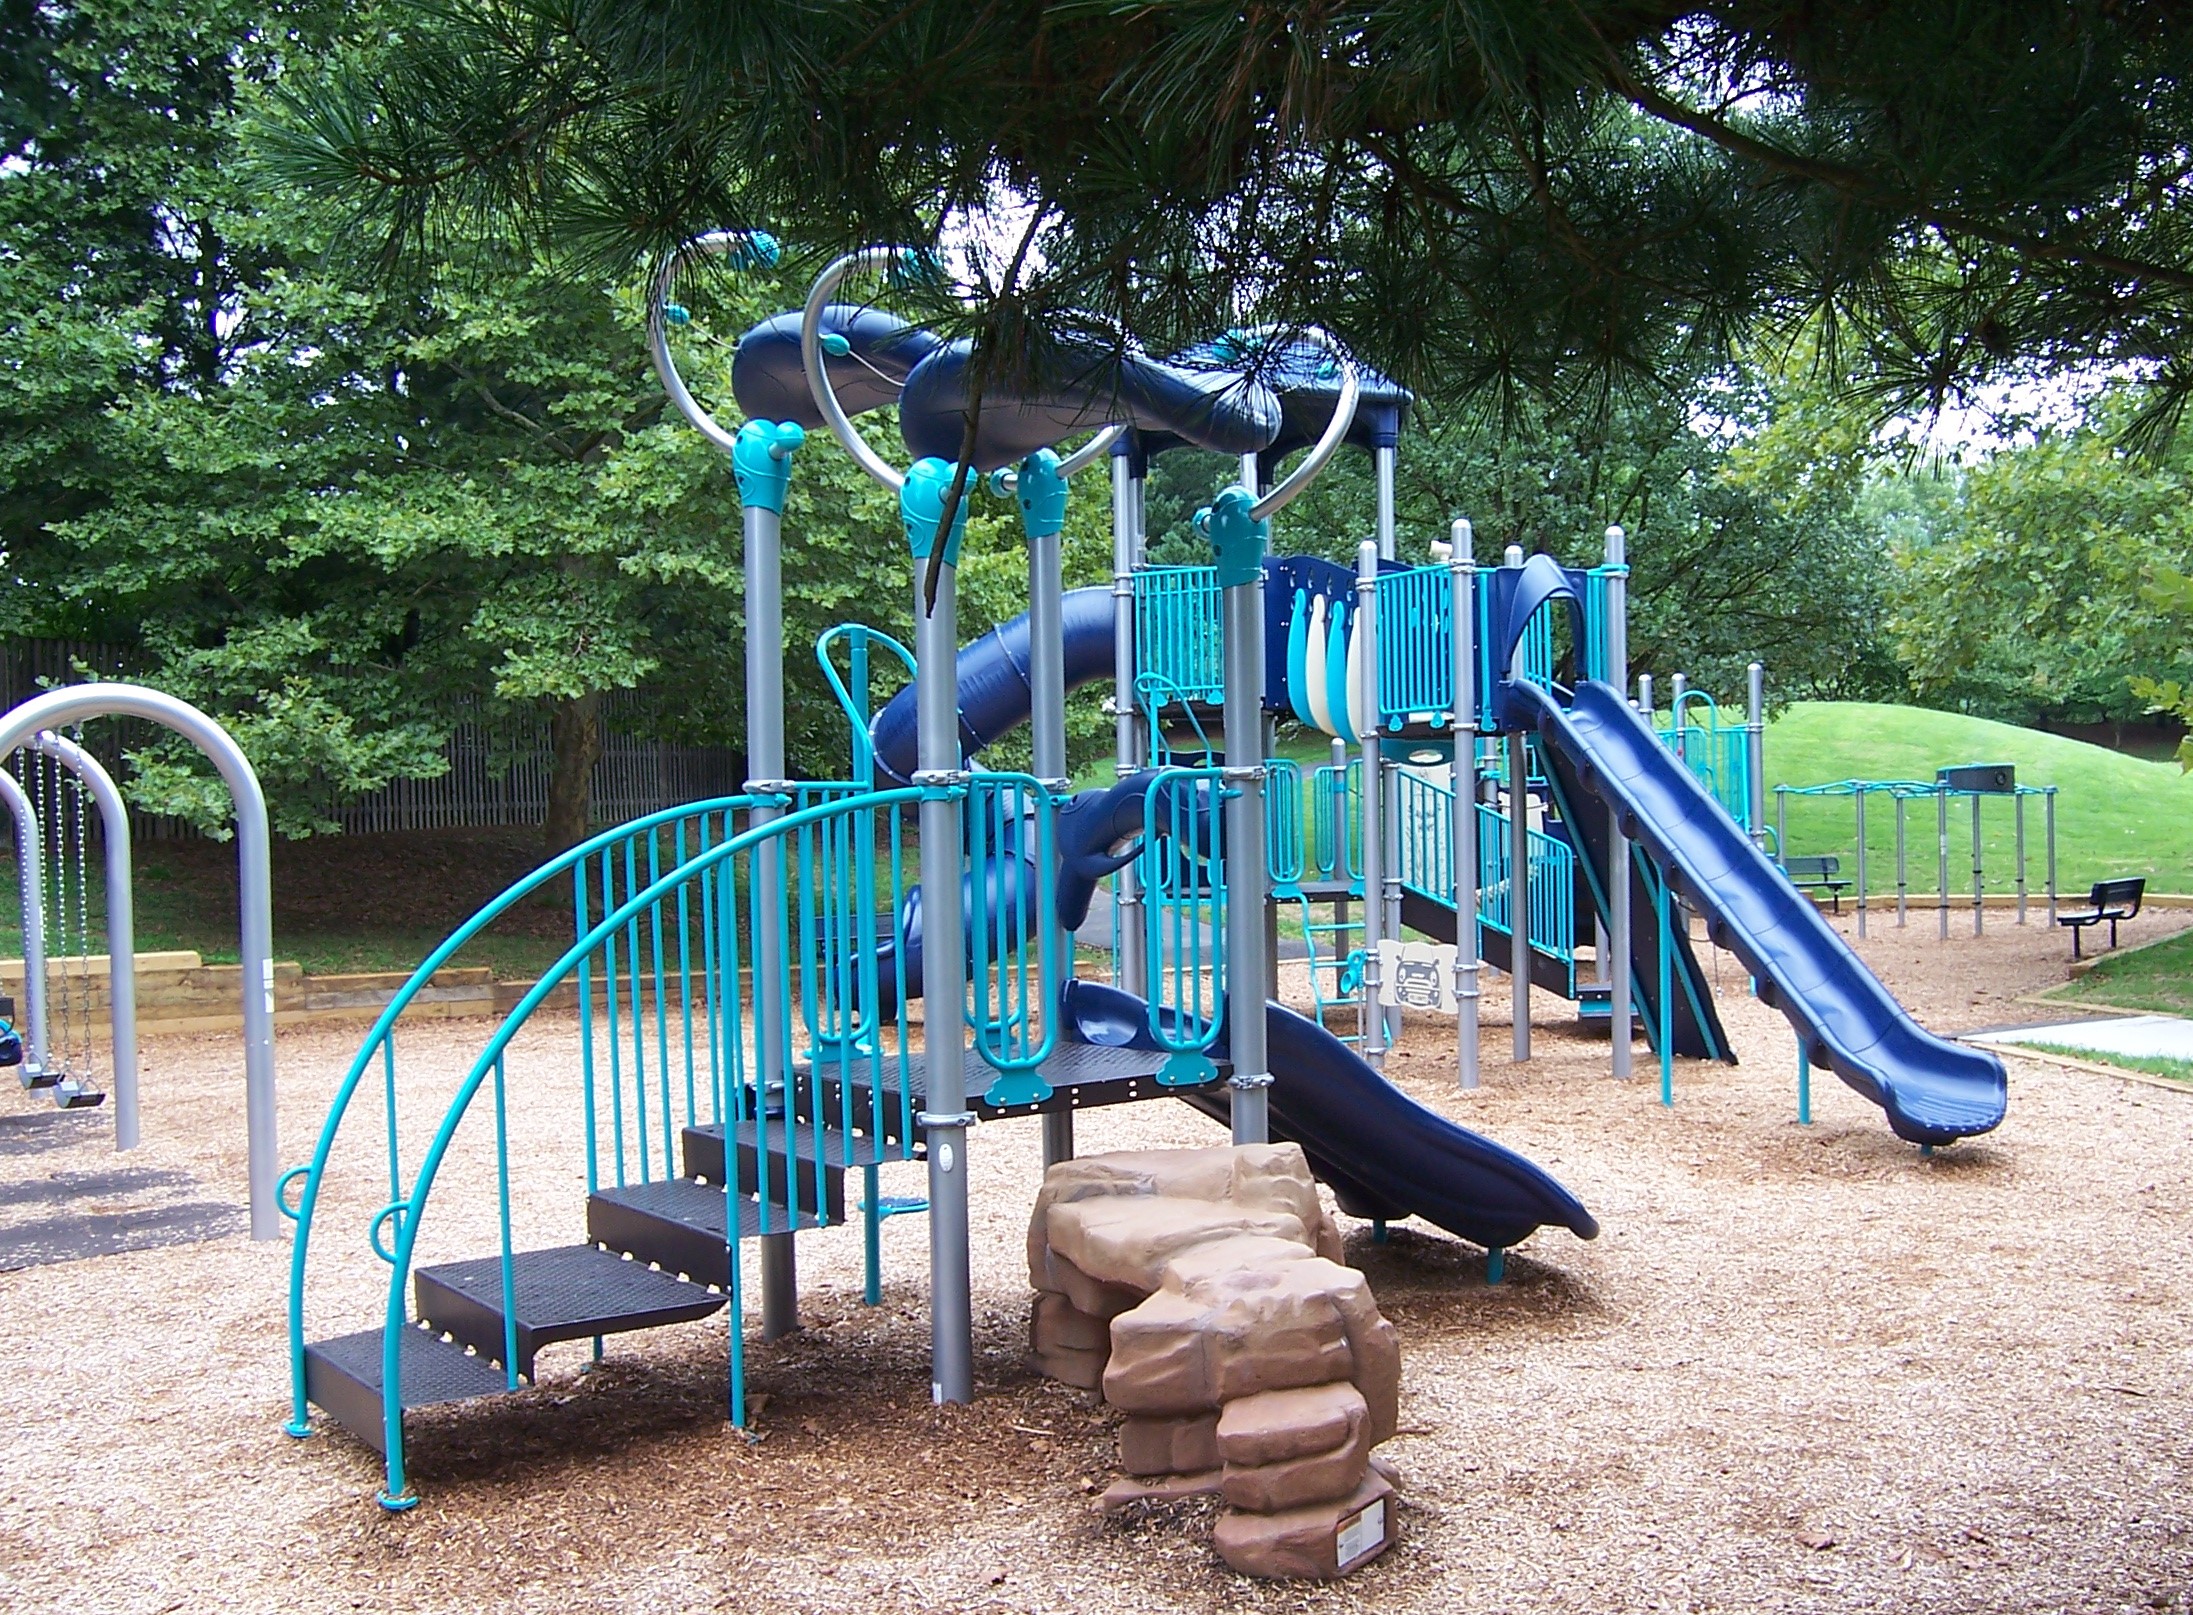 Playground equipment with slide